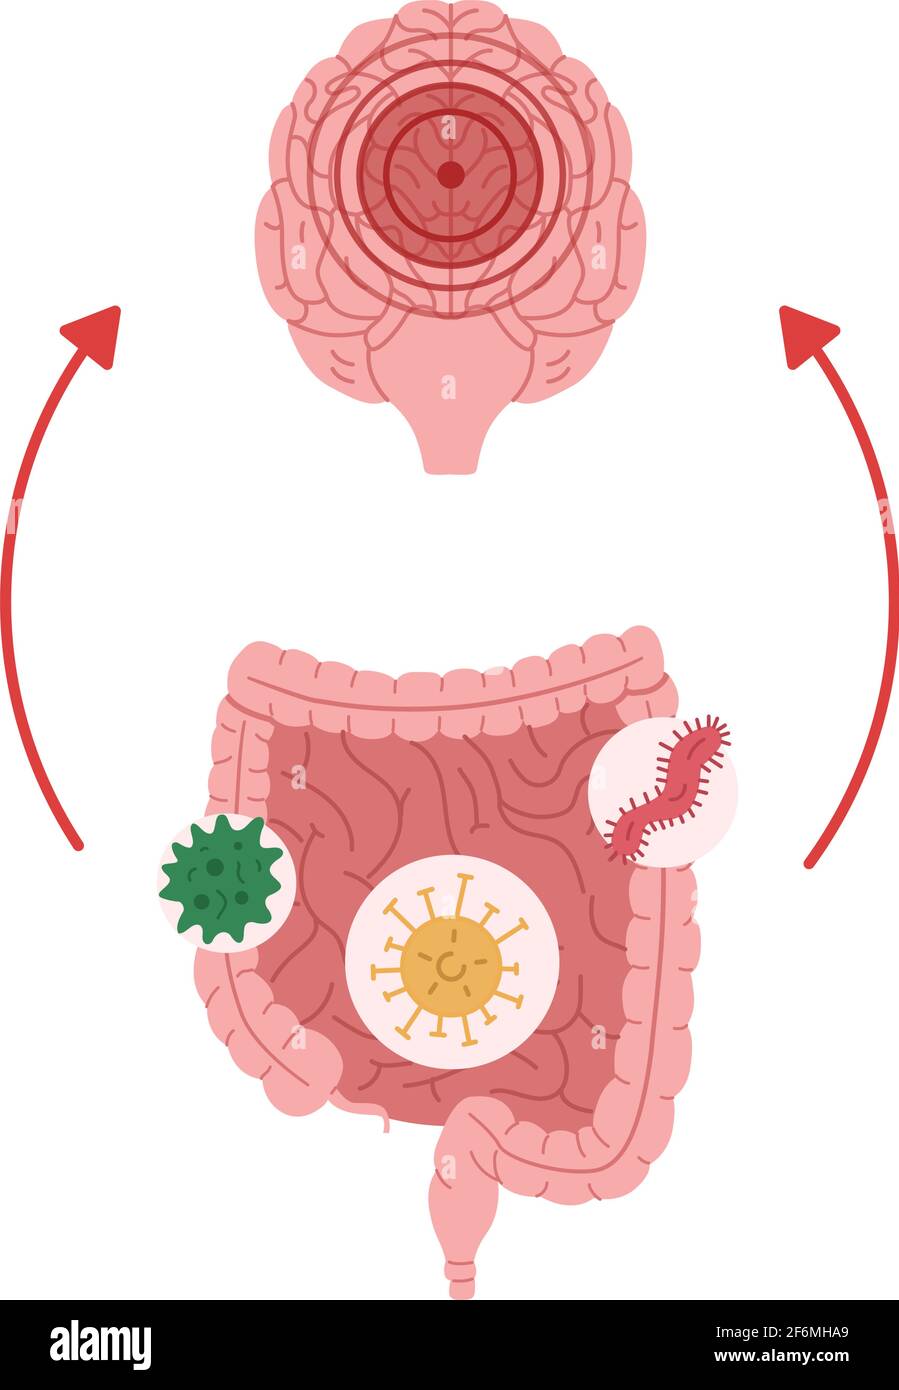 Una cattiva salute intestinale a causa dell'esposizione a microrganismi porta all'illustrazione vettoriale della neuroinfiammazione. Illustrazione Vettoriale